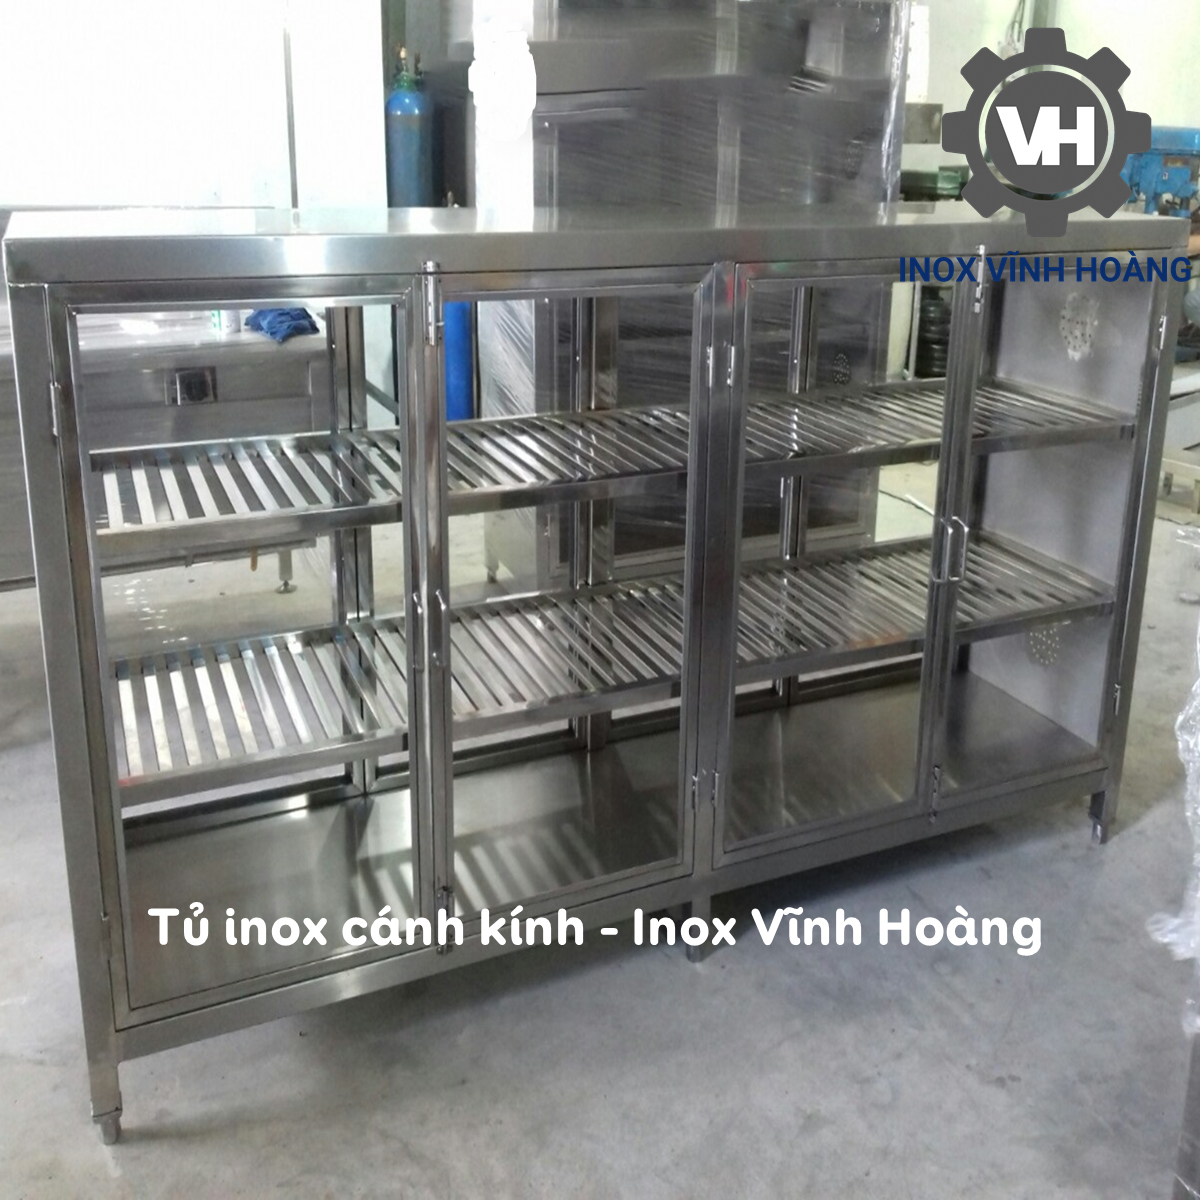 tủ chén inox 304 loại dài do inox vĩnh hoàng cung cấp và sản xuất